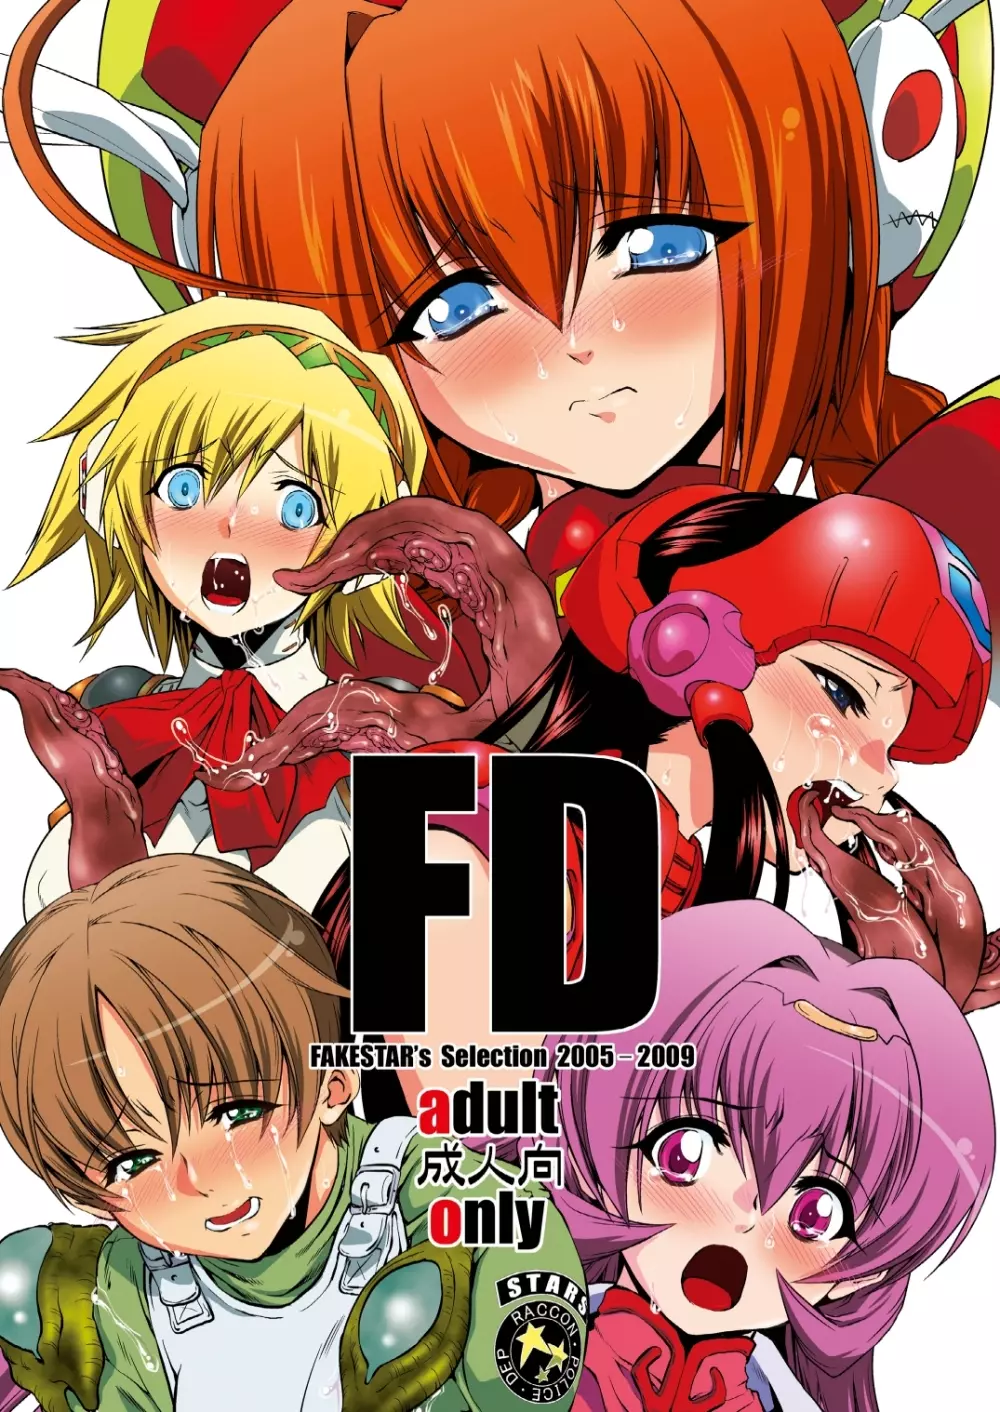 FD